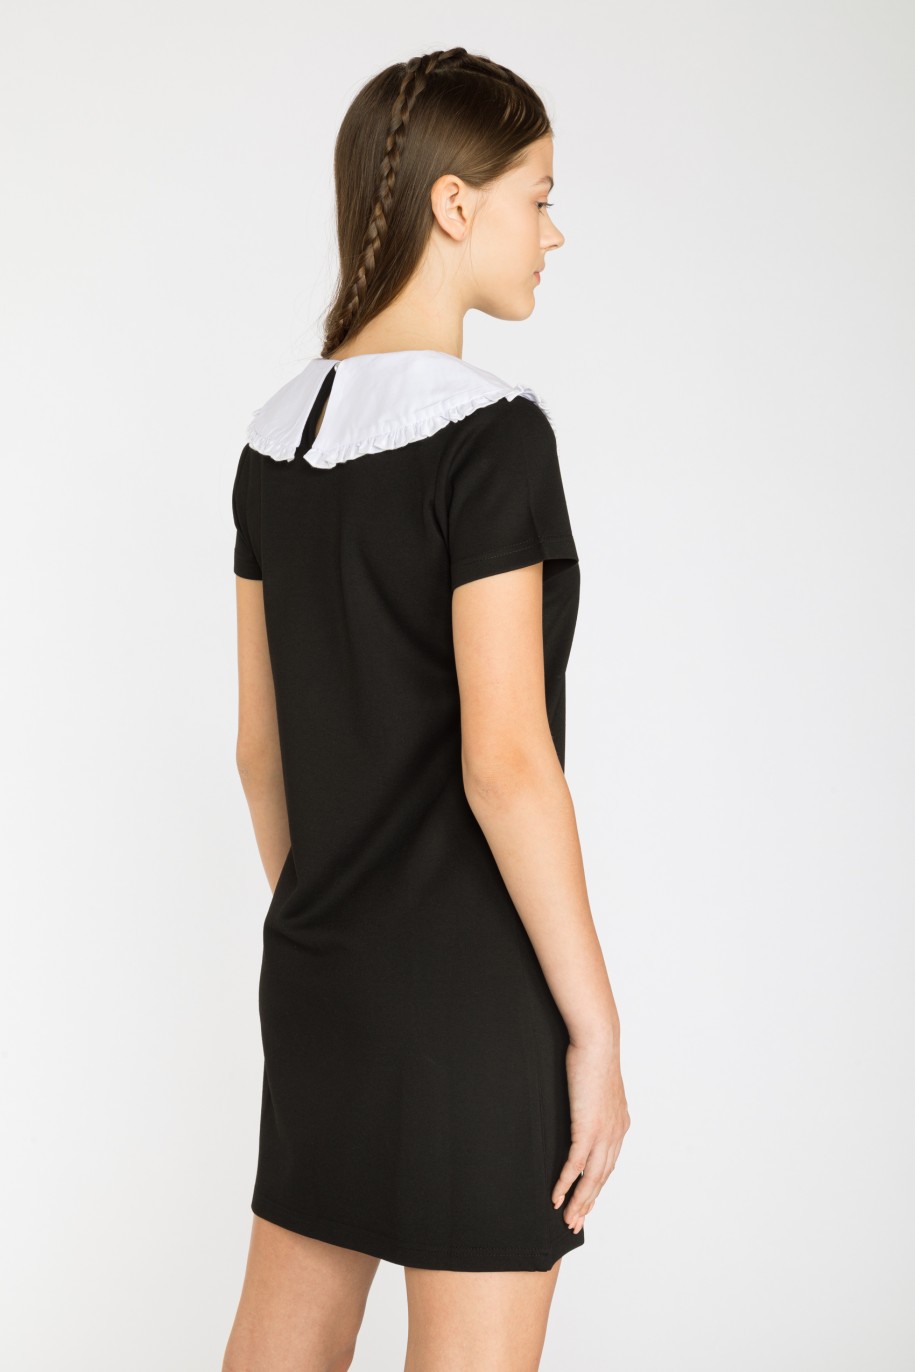 Czarna sukienka z białym kołnierzem - 35352